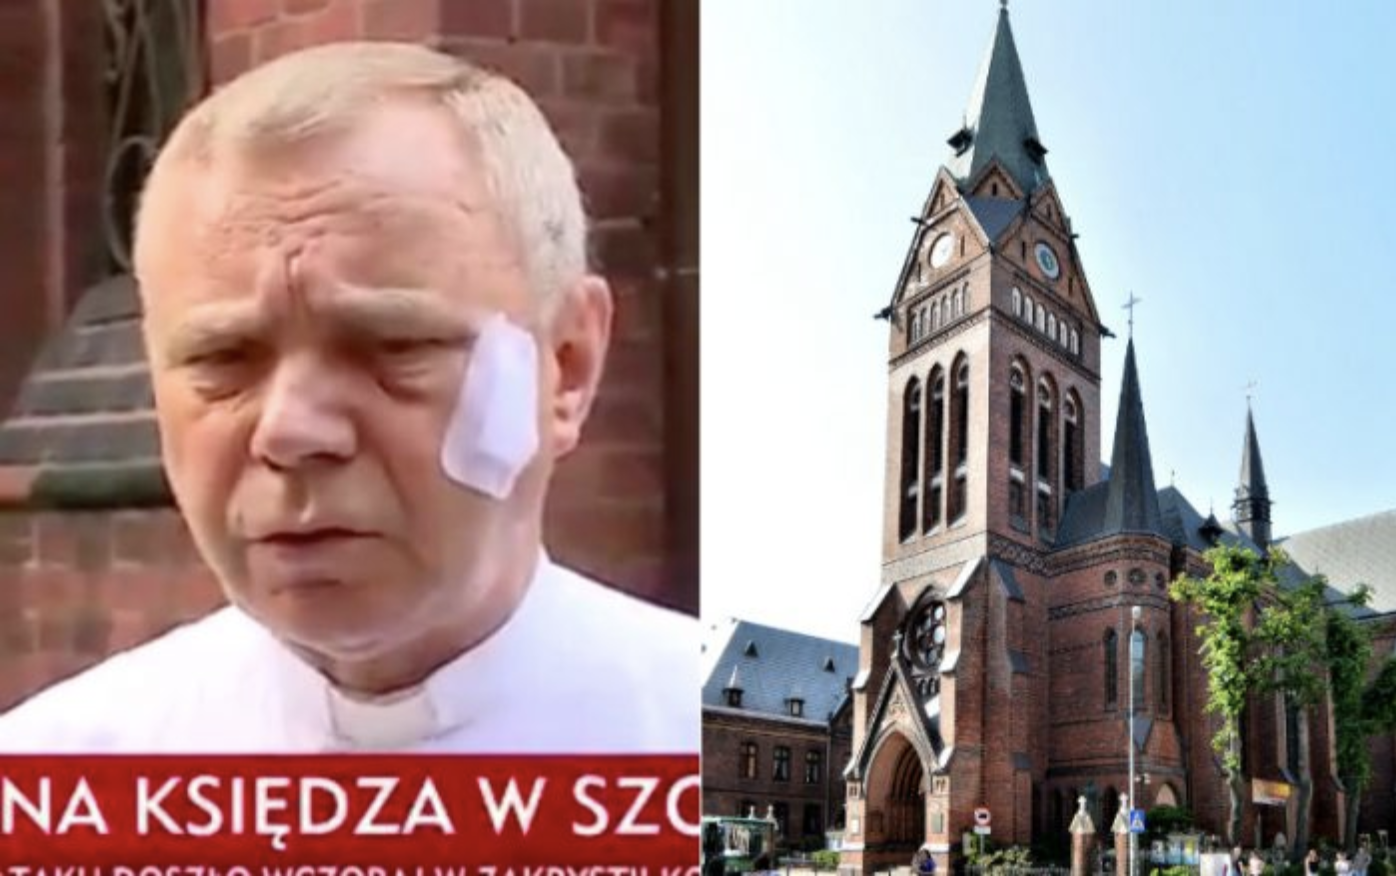 Sacerdote brutalmente attaccato con un rosario in una chiesa polacca: "Ero ricoperto di sangue"